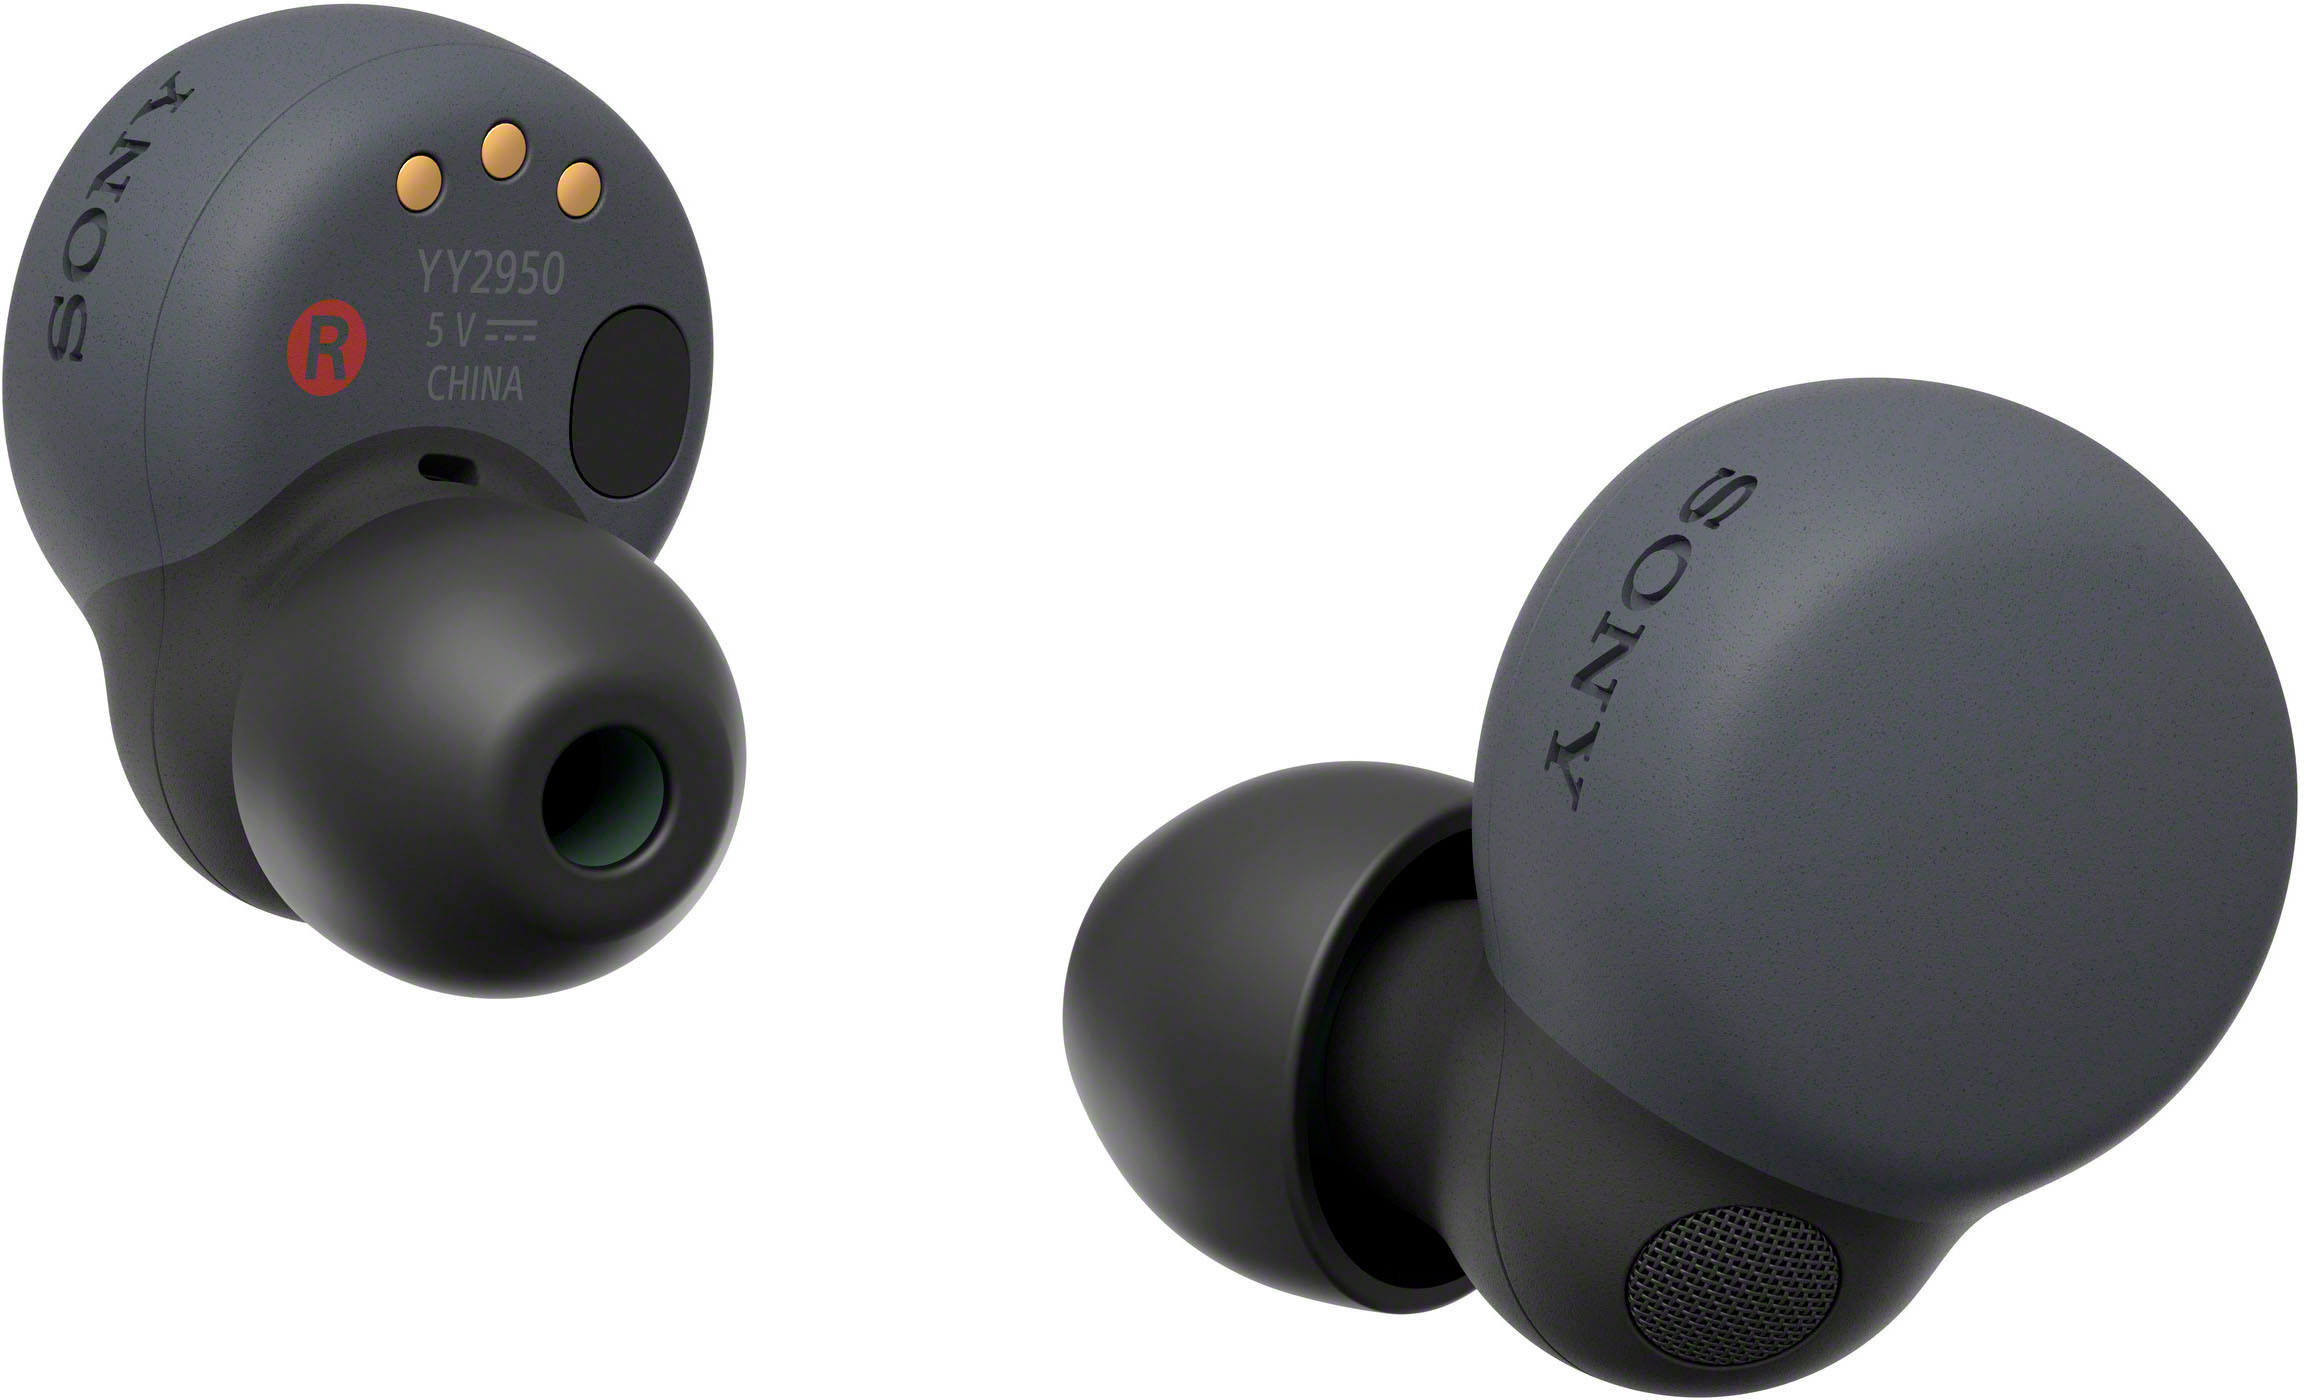 Sony - LinkBuds S True Wireless Noise Canceling Earbuds - Black